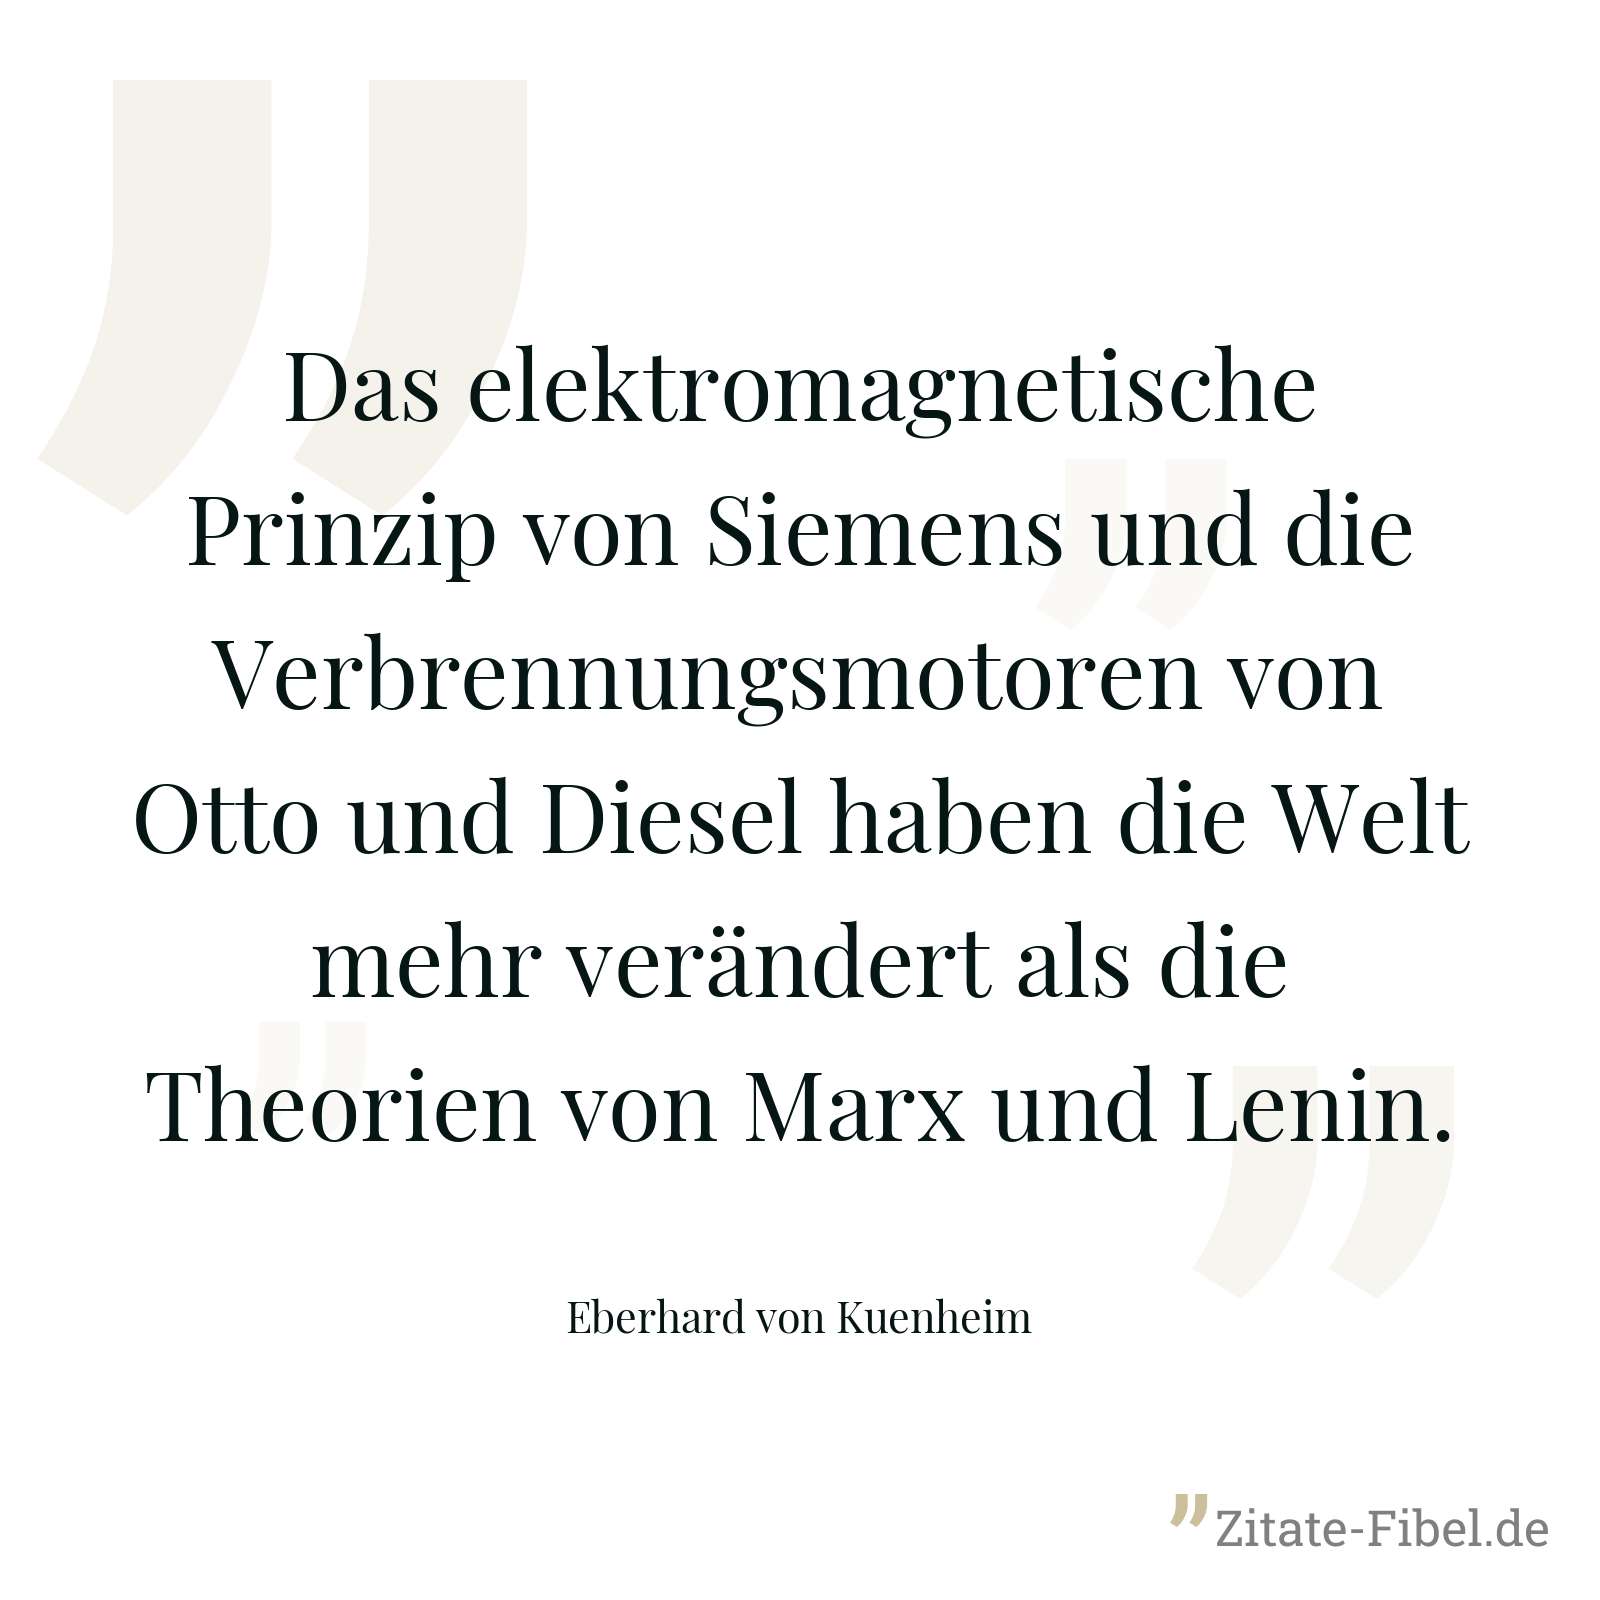 Das elektromagnetische Prinzip von Siemens und die Verbrennungsmotoren von Otto und Diesel haben die Welt mehr verändert als die Theorien von Marx und Lenin. - Eberhard von Kuenheim